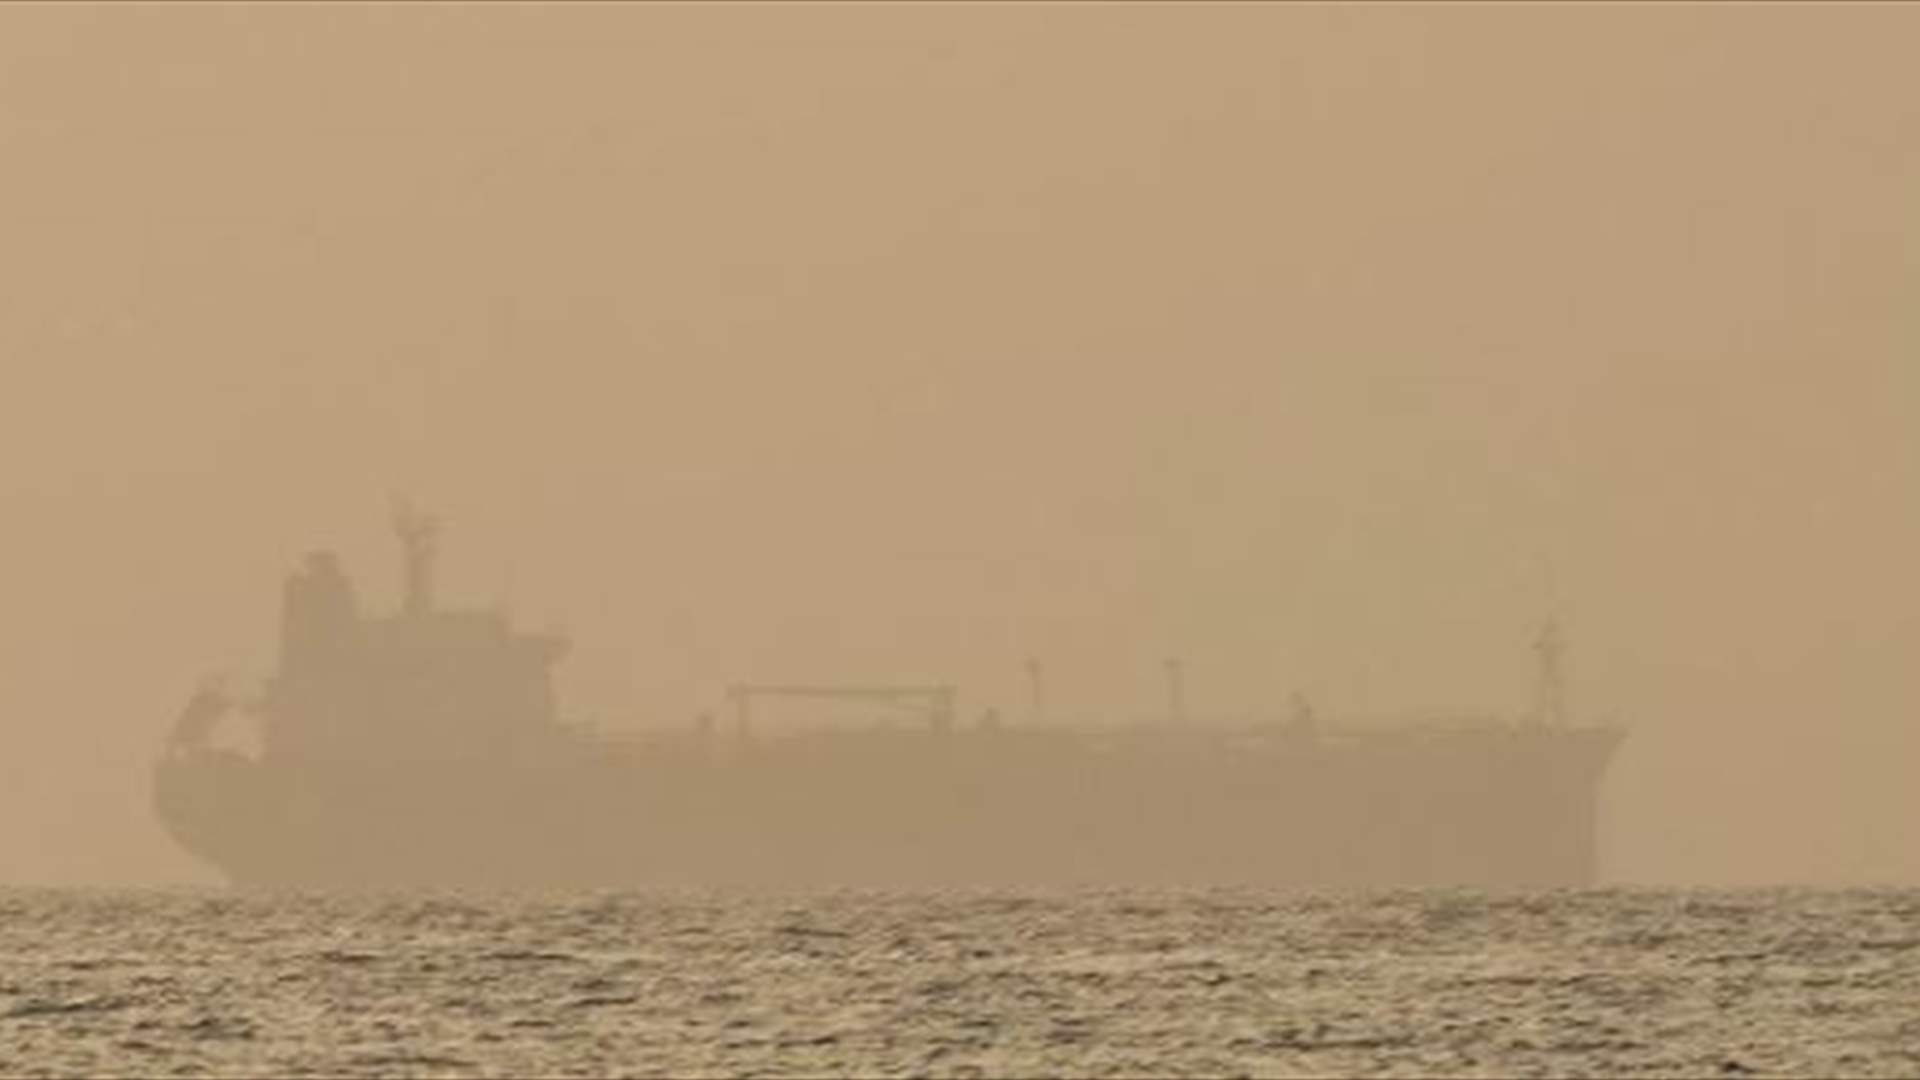 سفينة هندية تستجيب لنداء إستغاثة من سفينة ترفع علم جزر مارشال 